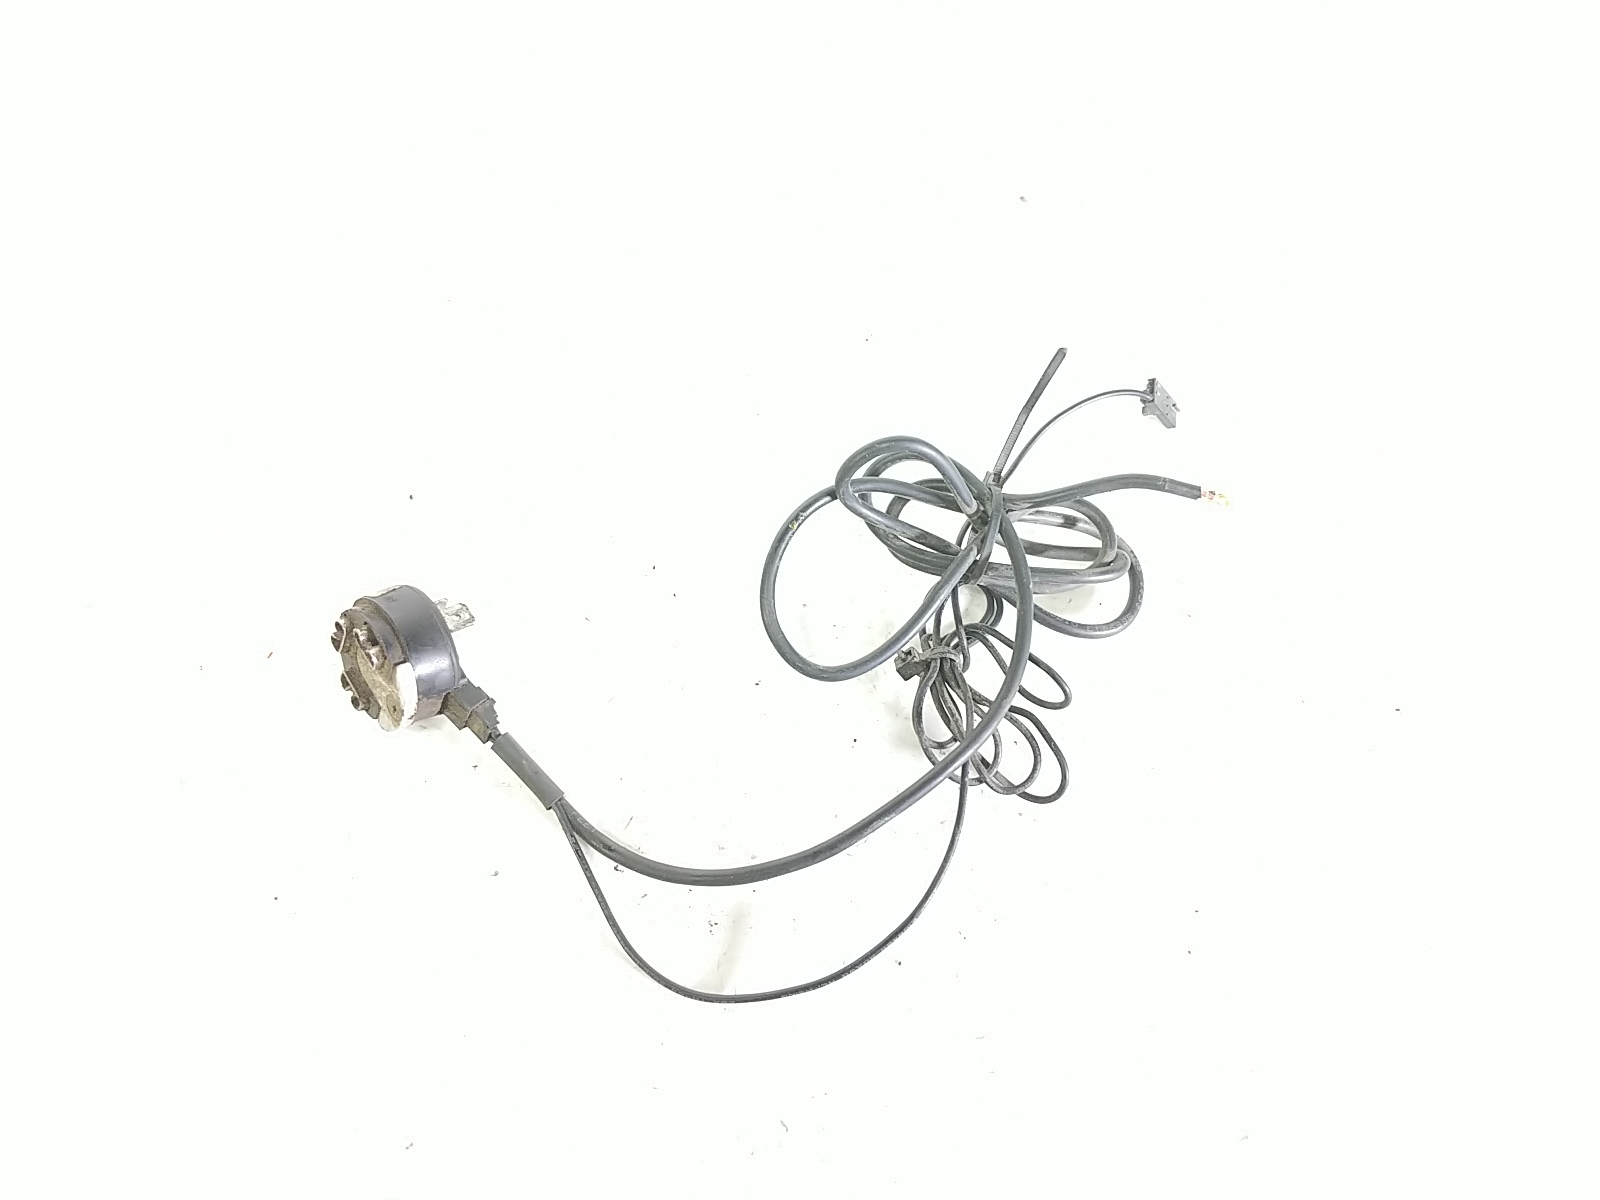 01 Triumph Tiger 955i Relay Plug Wire Harness